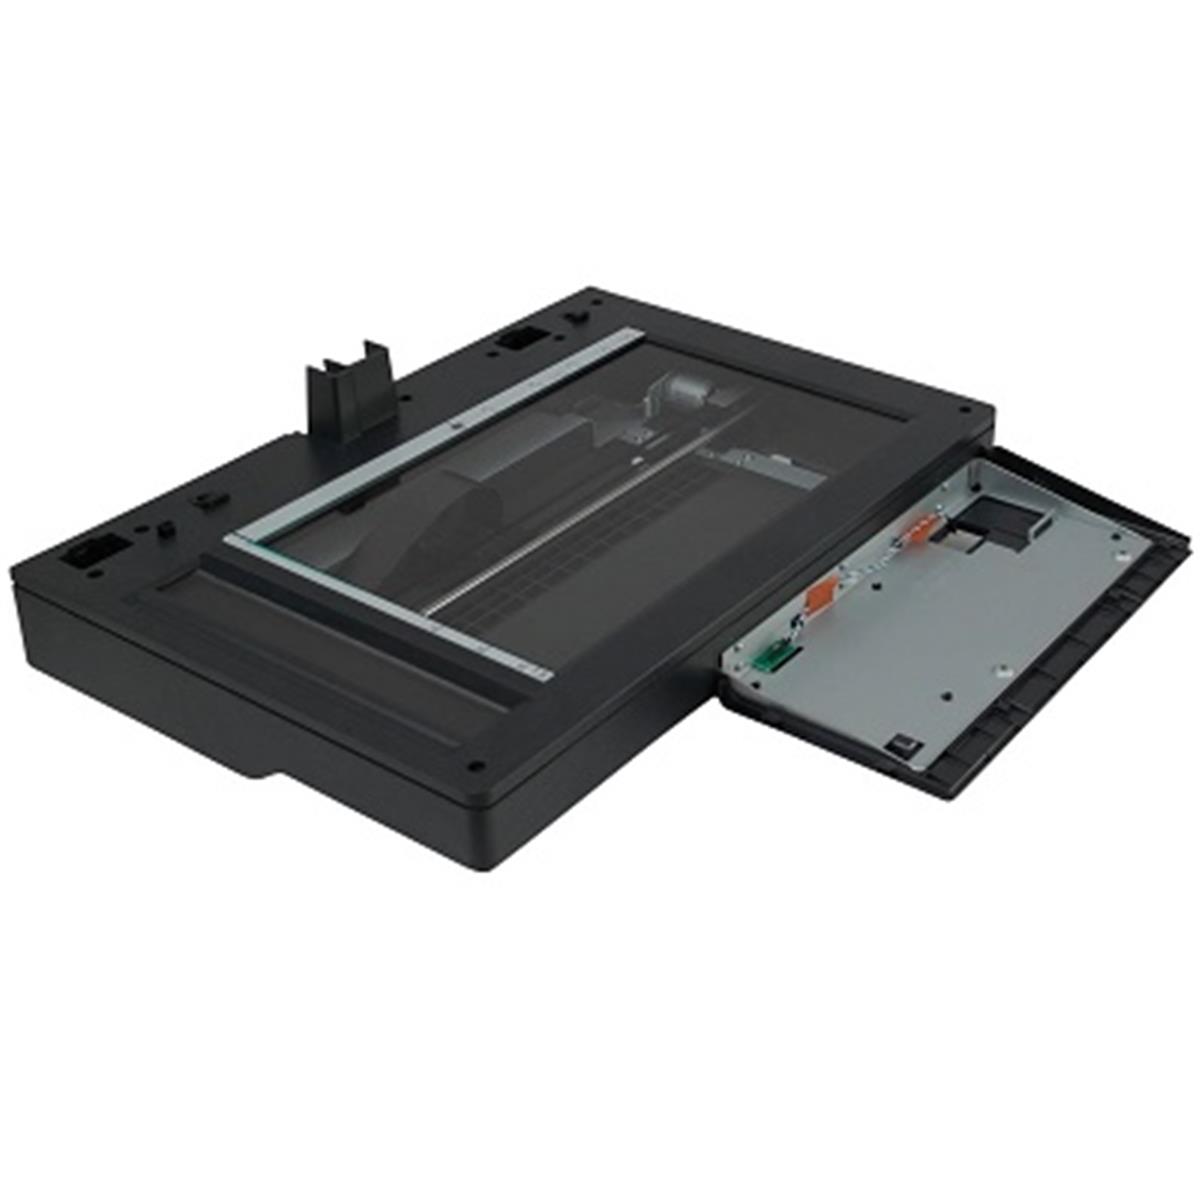 CD644-67922-OEM LaserJet Ent 500 Image Scanner Whole Unit Assembly -  HP